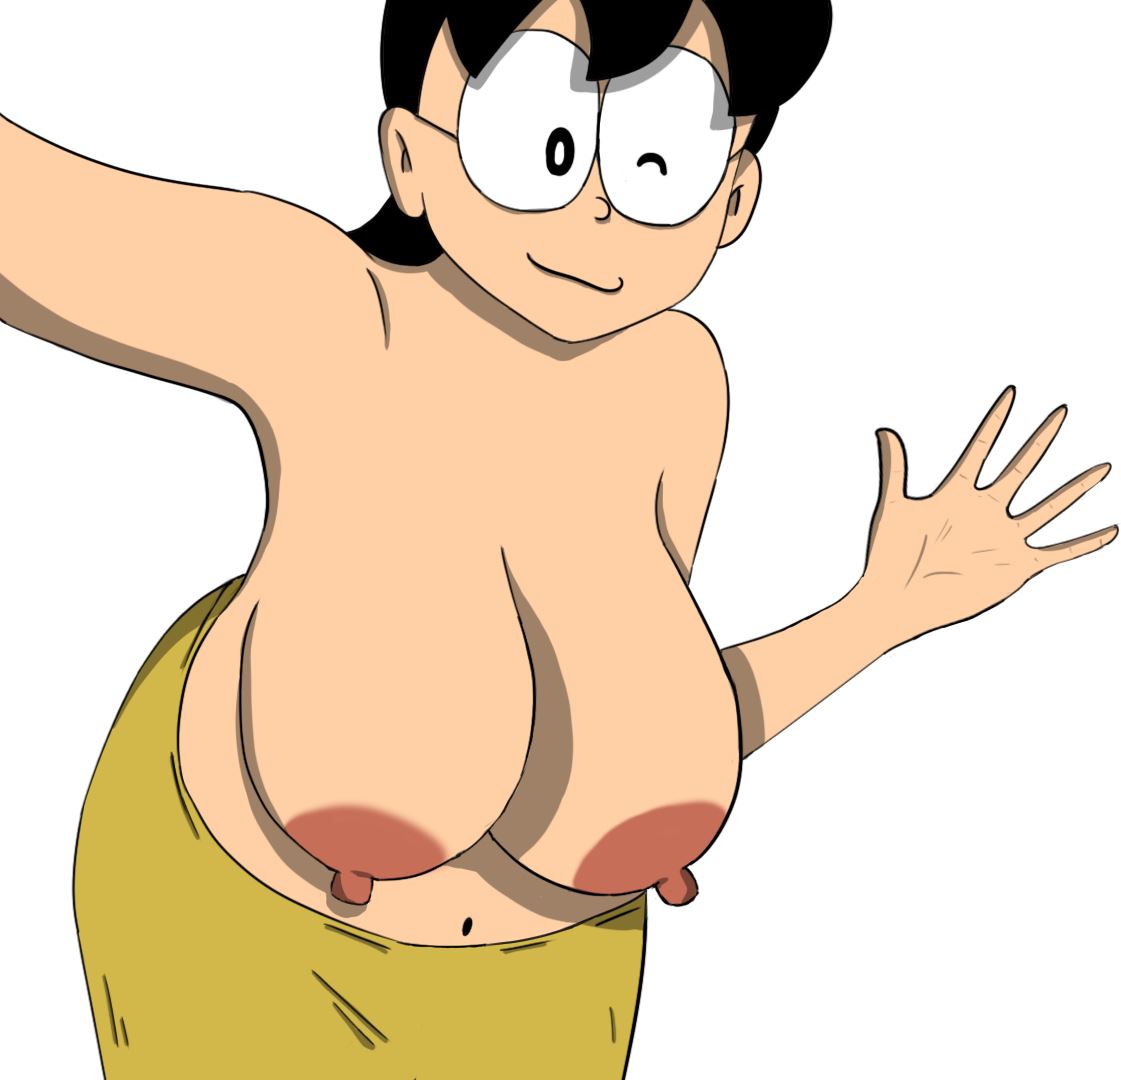 Xx X Sex Doraemon - Ren'Py] Doraemon X - v0.8c by mayonnaisee 18+ Adult xxx Porn Game Download